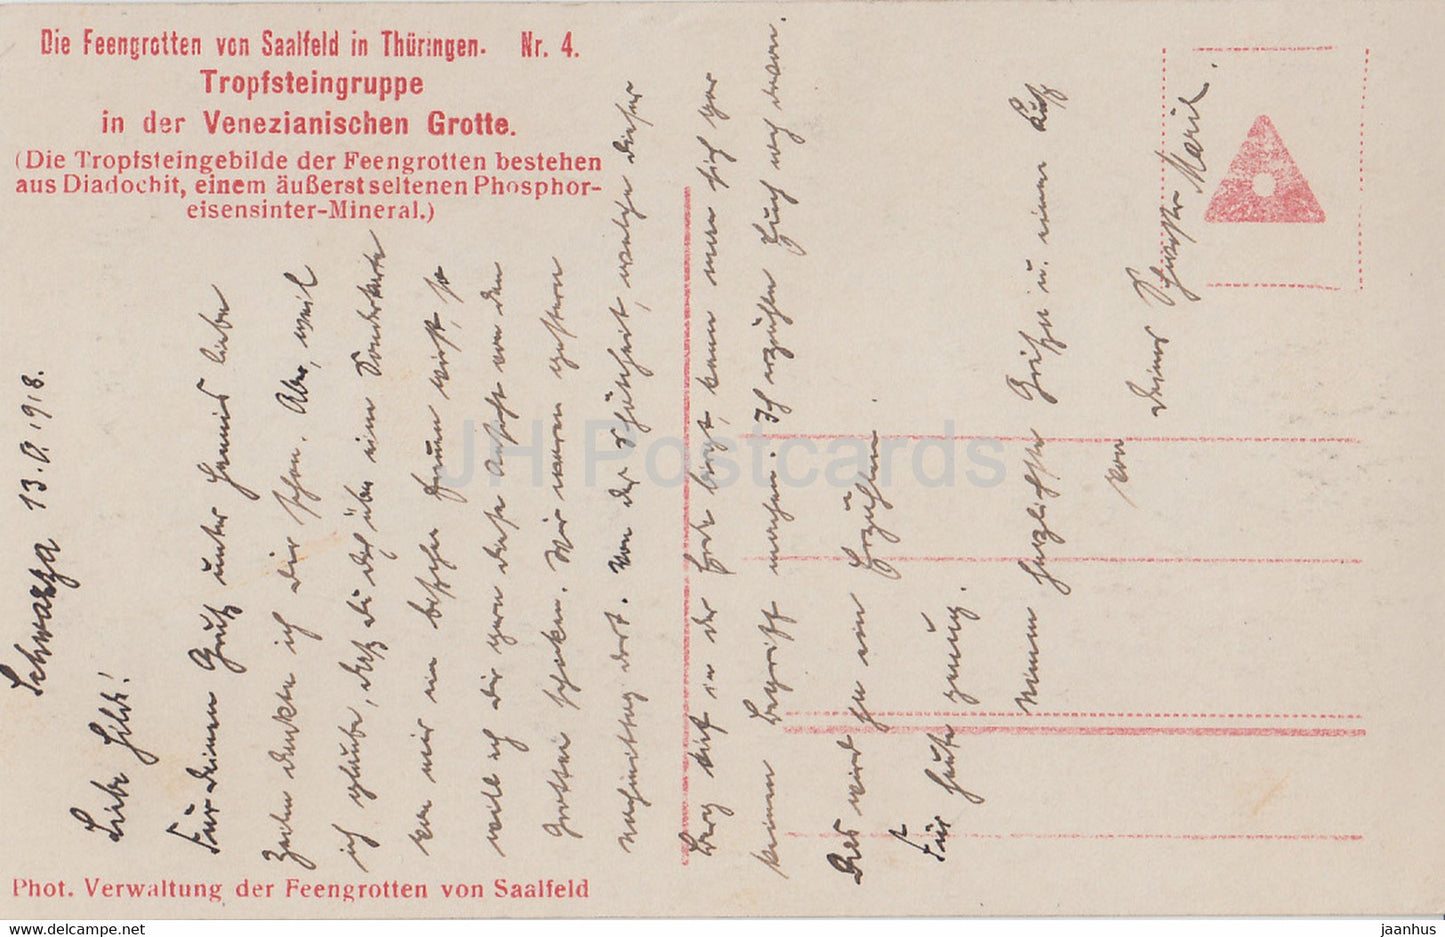 Die Feengrotten von Saalfeld in Thüringen - Tropfsteingruppe in der Venezianischen Grotte alte Postkarte - Deutschland - gebraucht